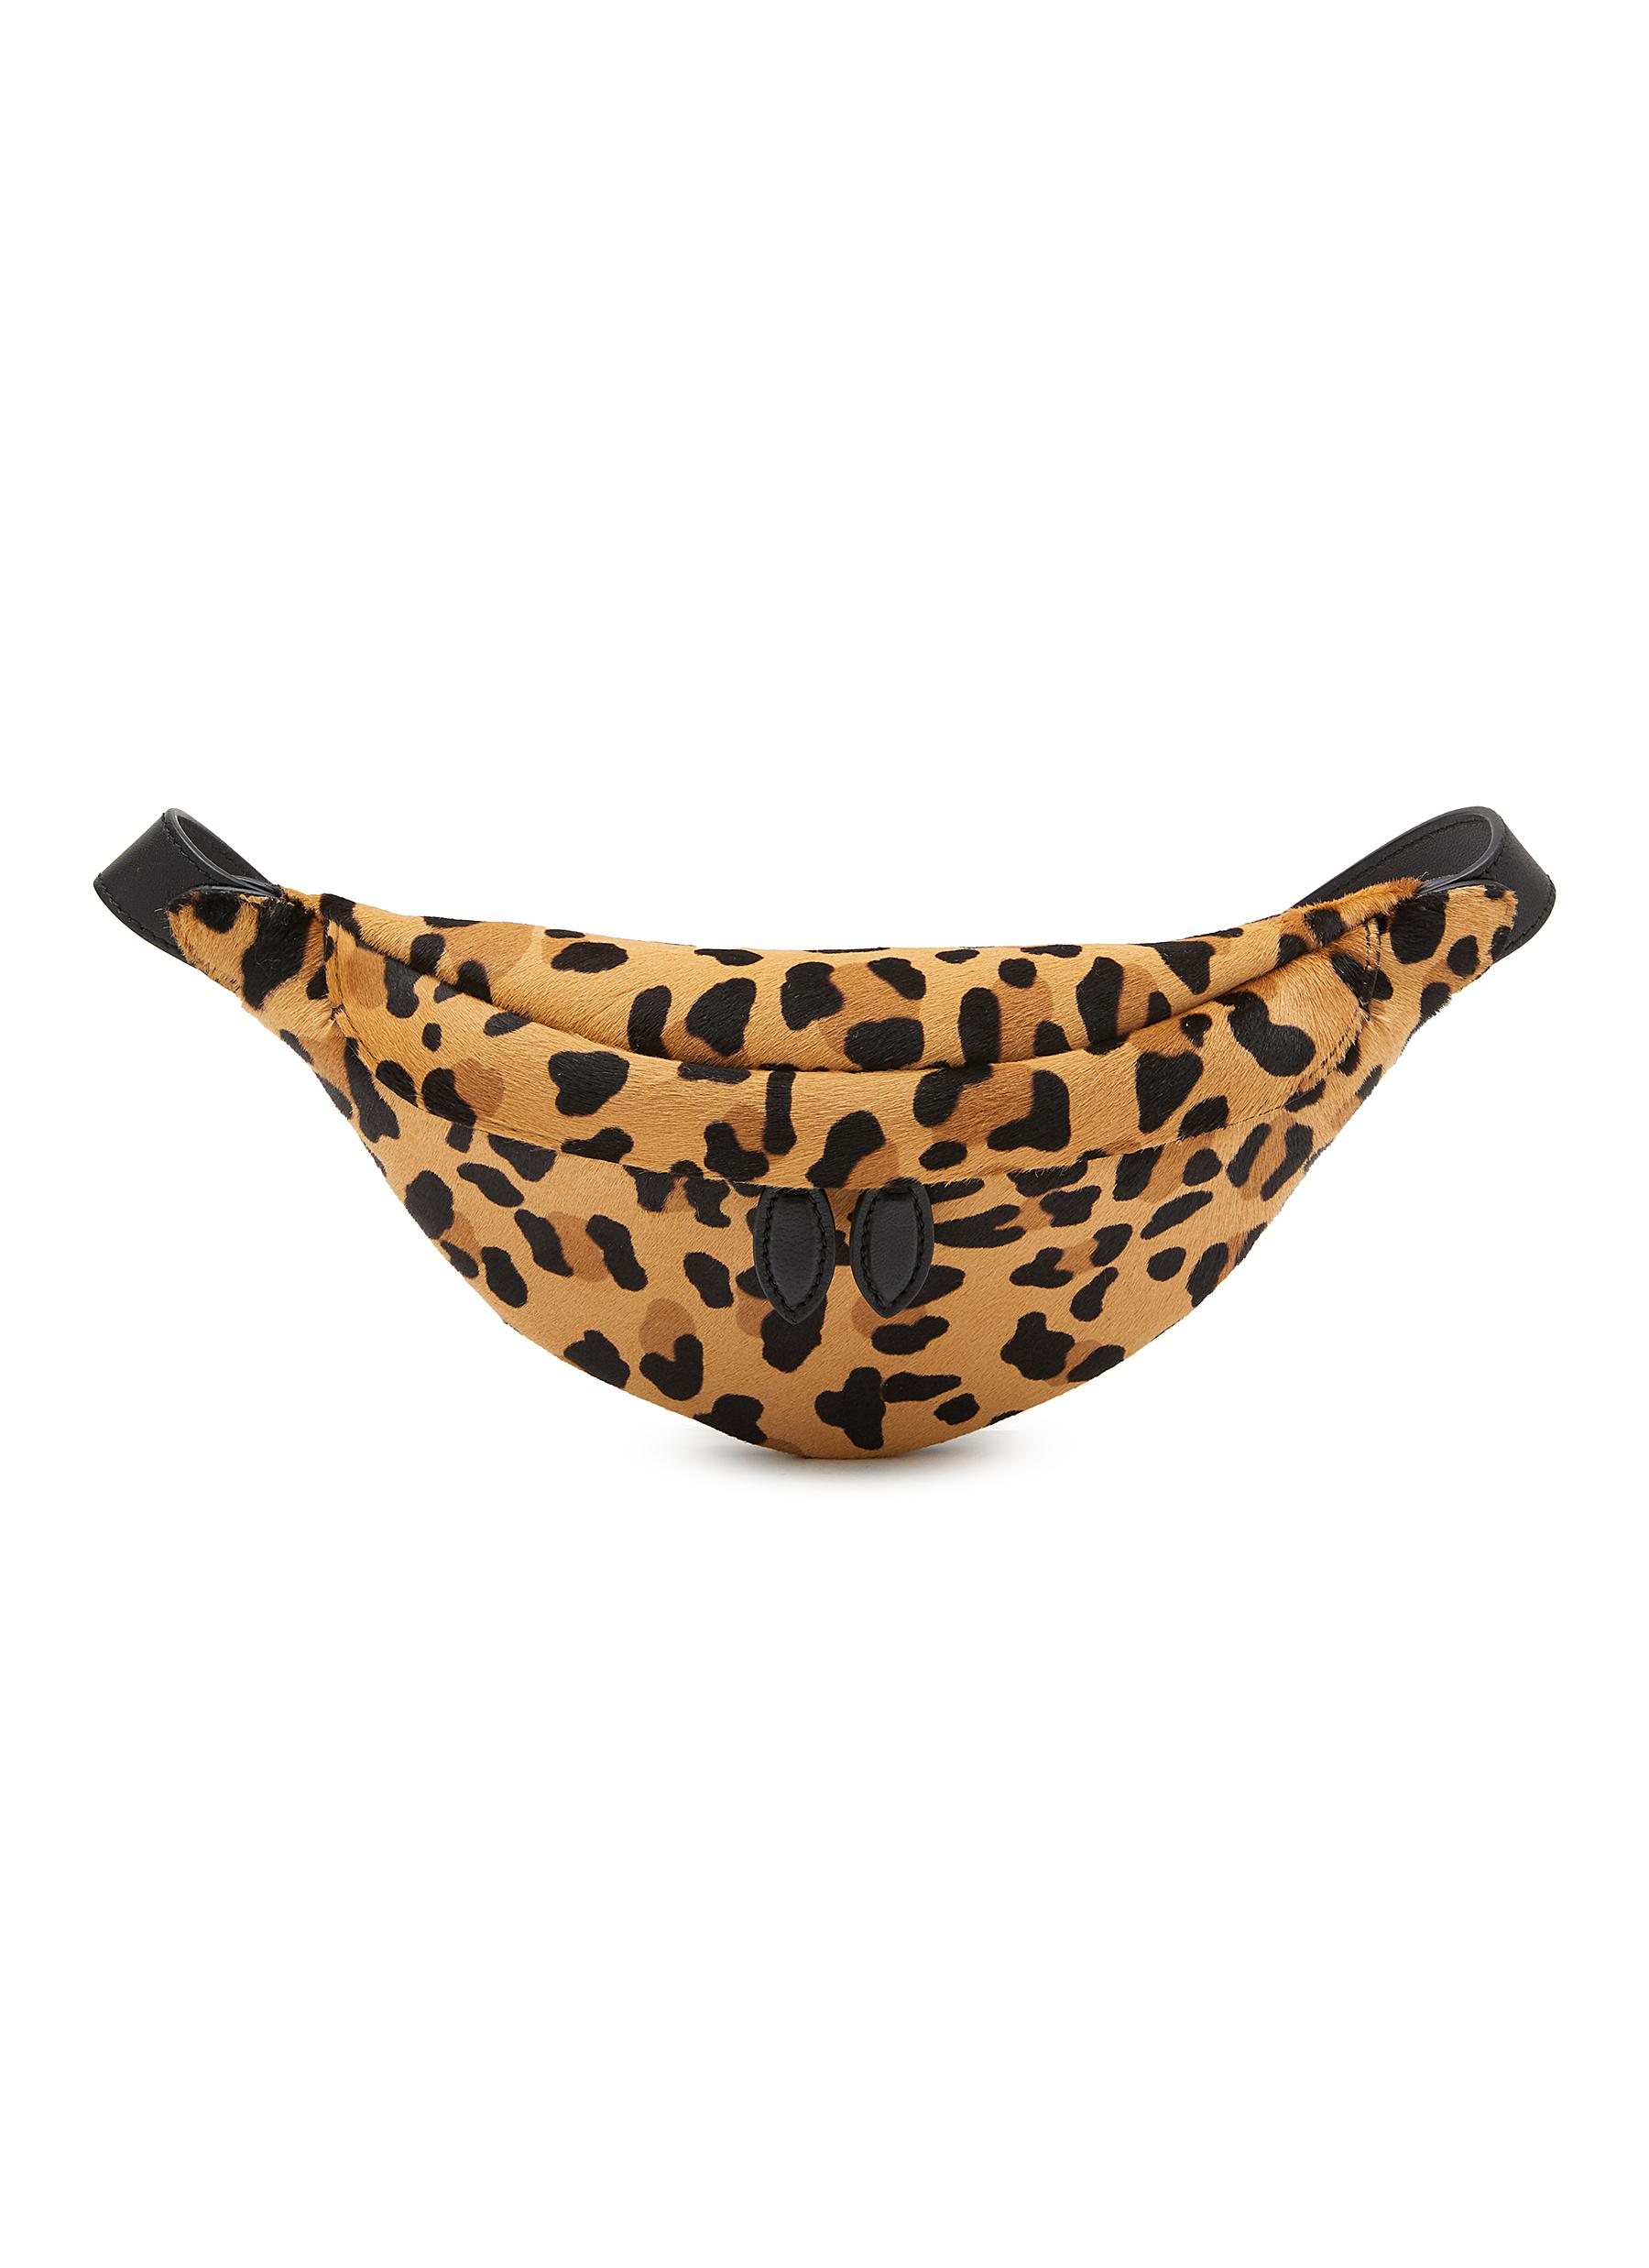 XS Leopard Print Leather Bum Bag